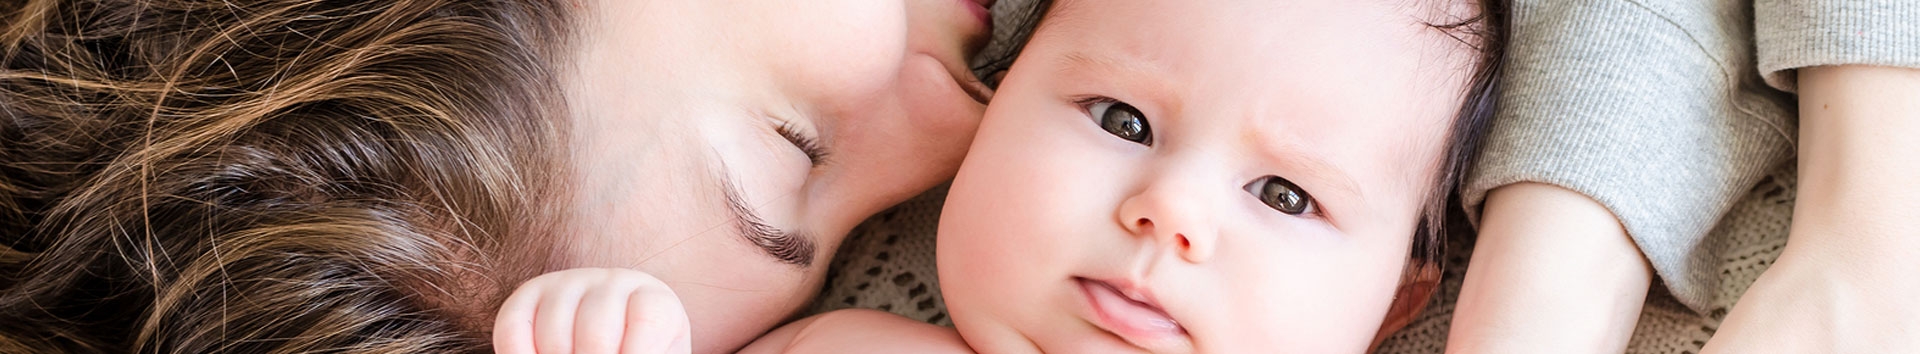 Descubra formas de acalmar o bebê durante o choro